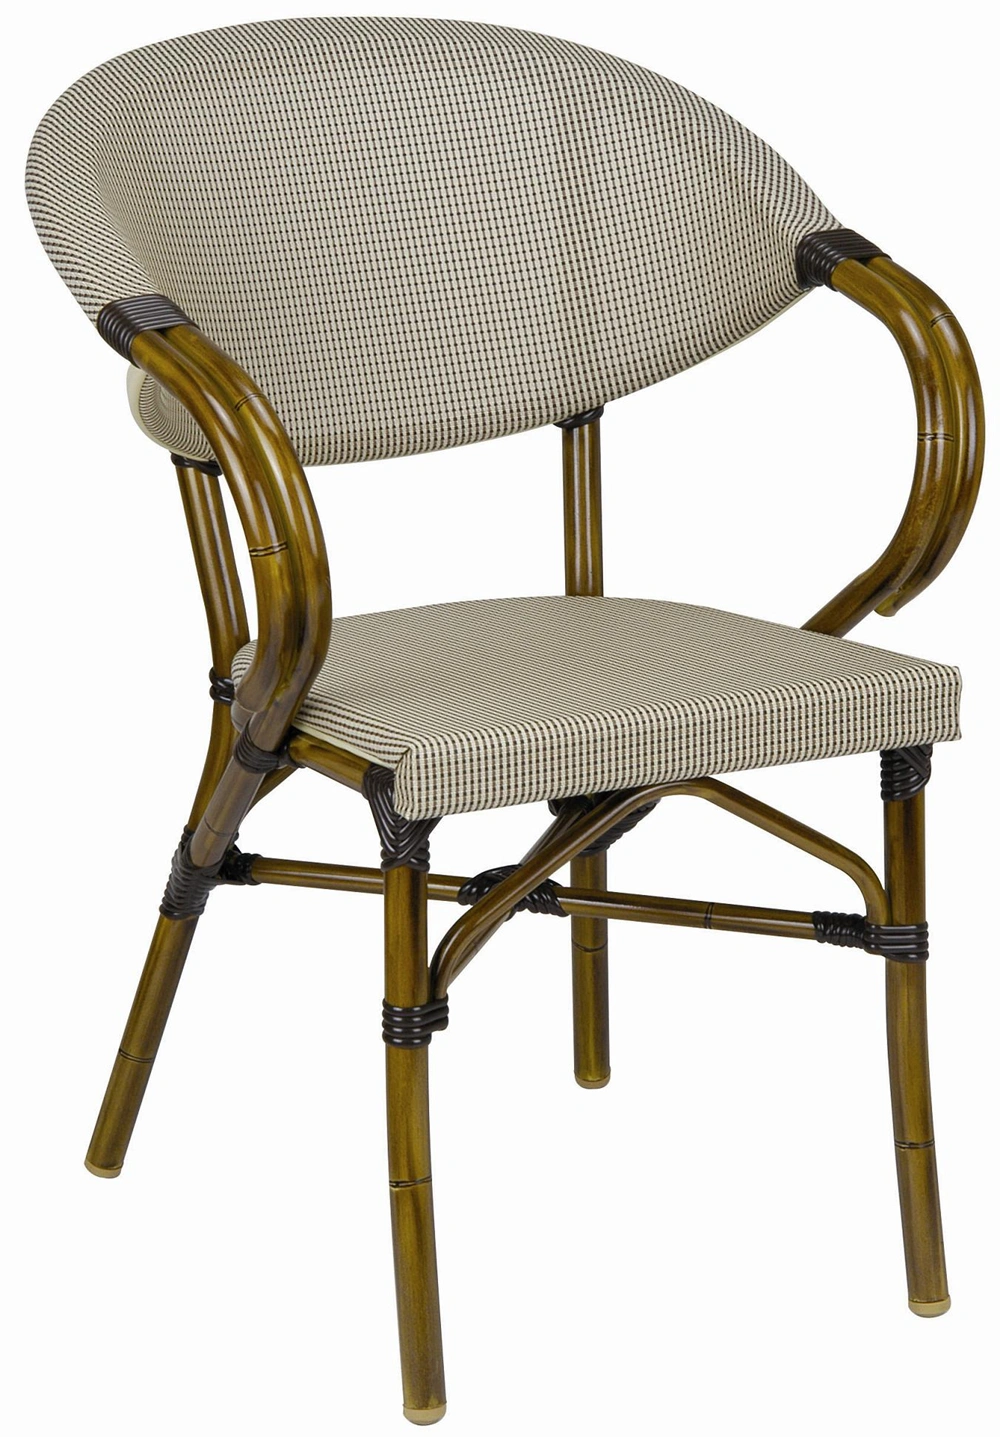 Best Price Outdoor Garden Round Wire Inside Wicker Bistro Rattan Chair